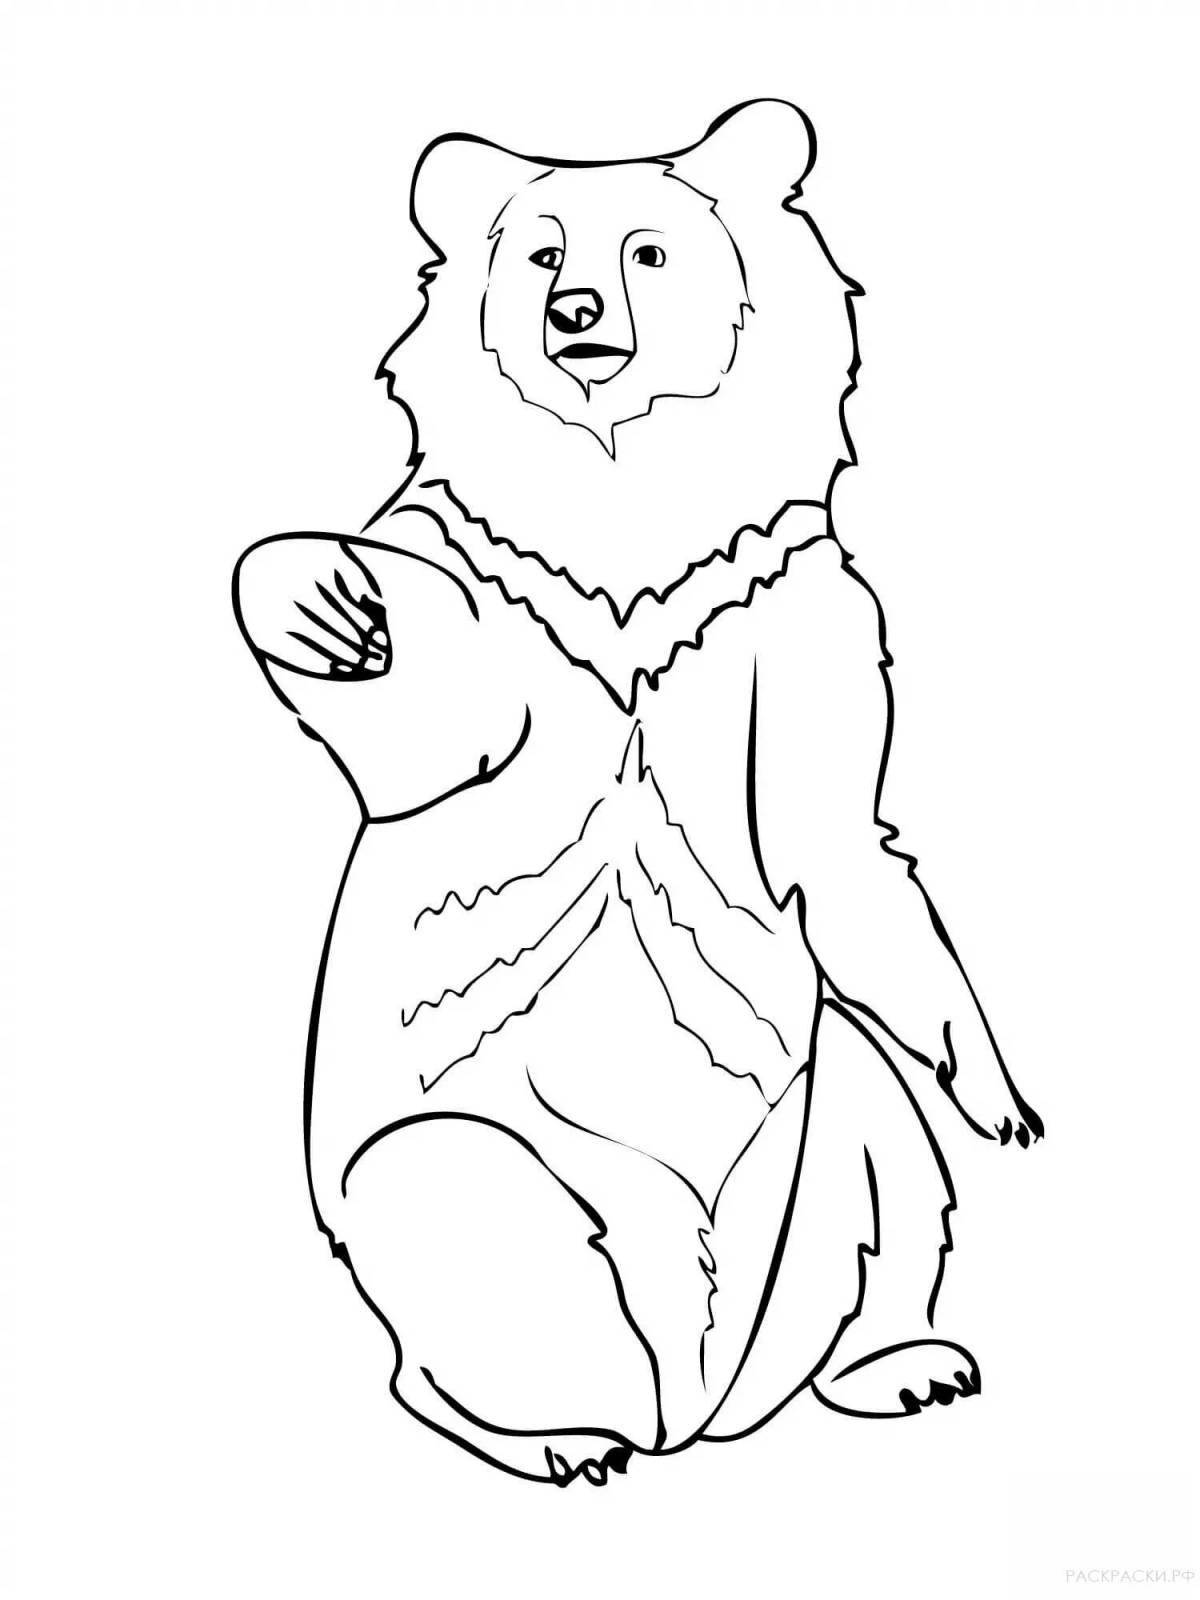 Himalayan bear coloring page